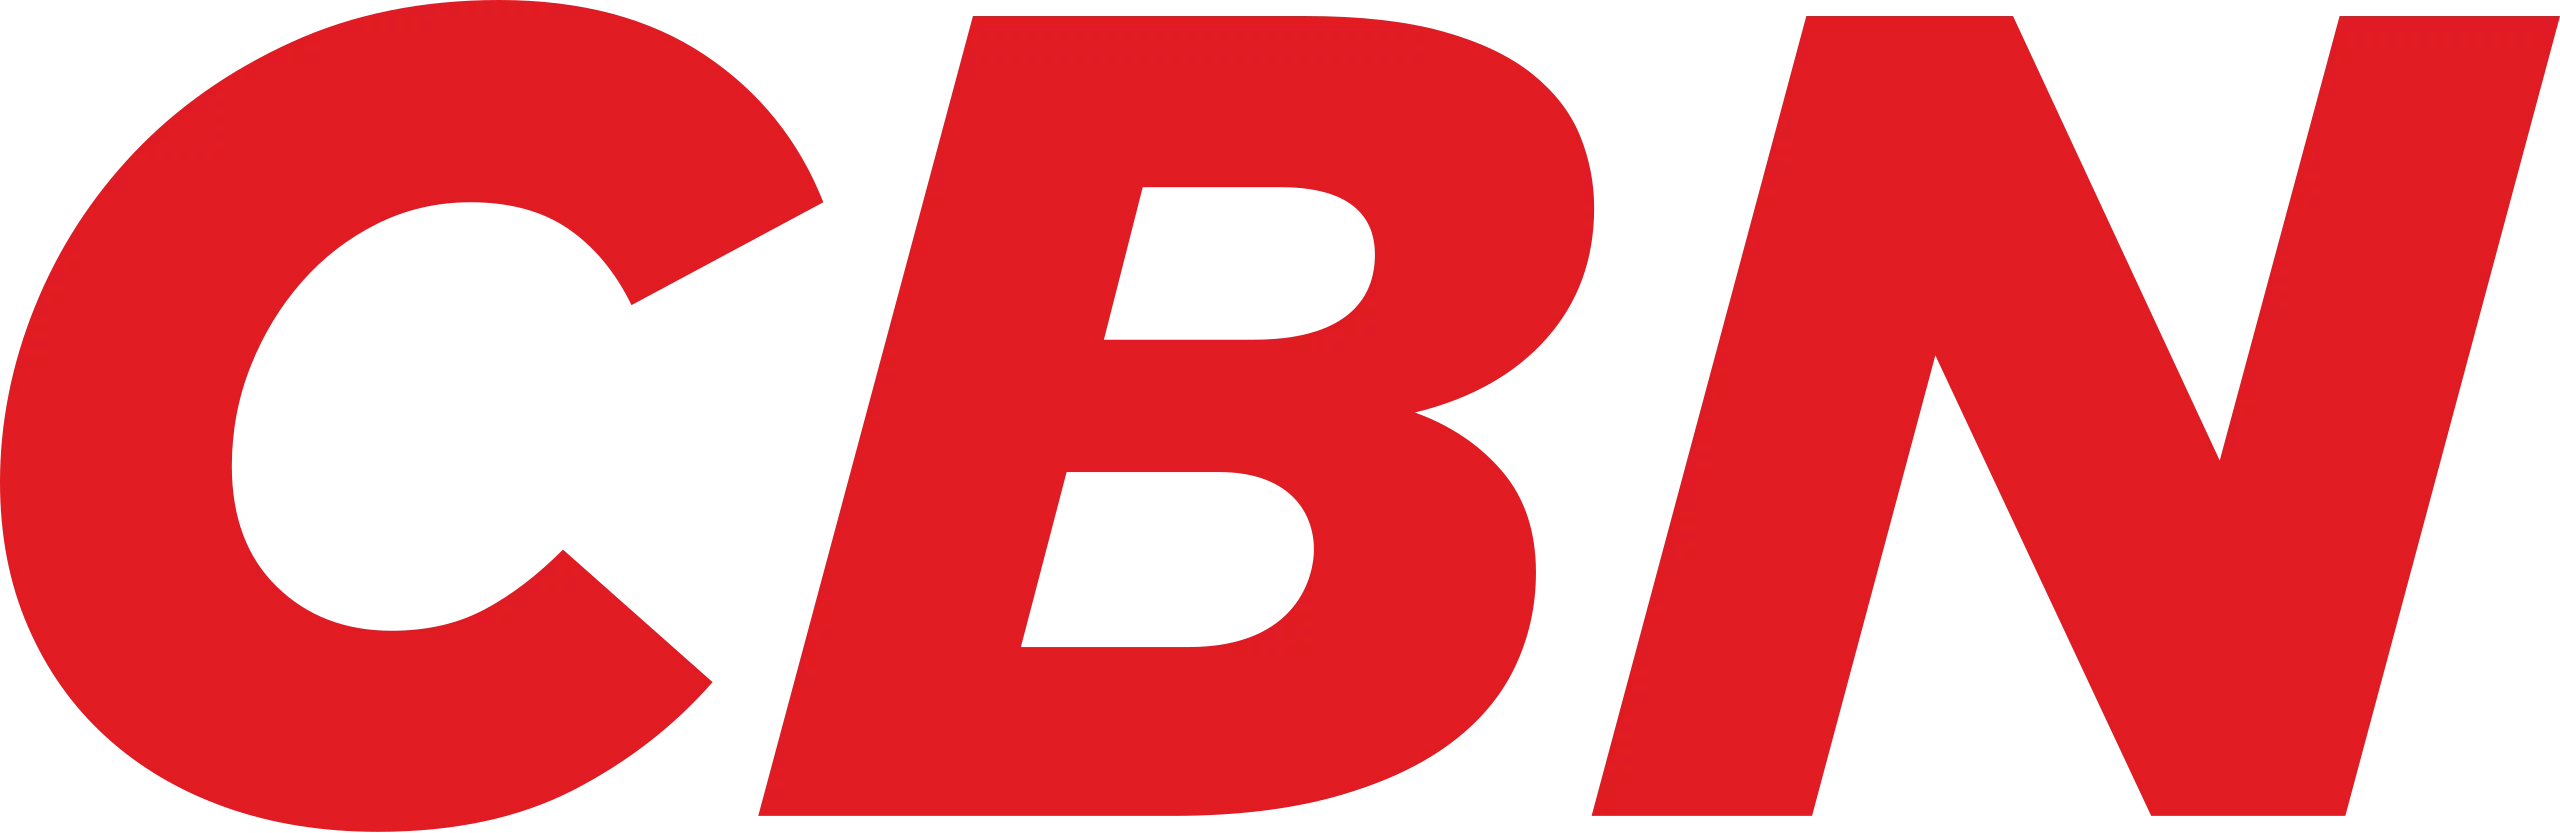 CBN_logo.svg